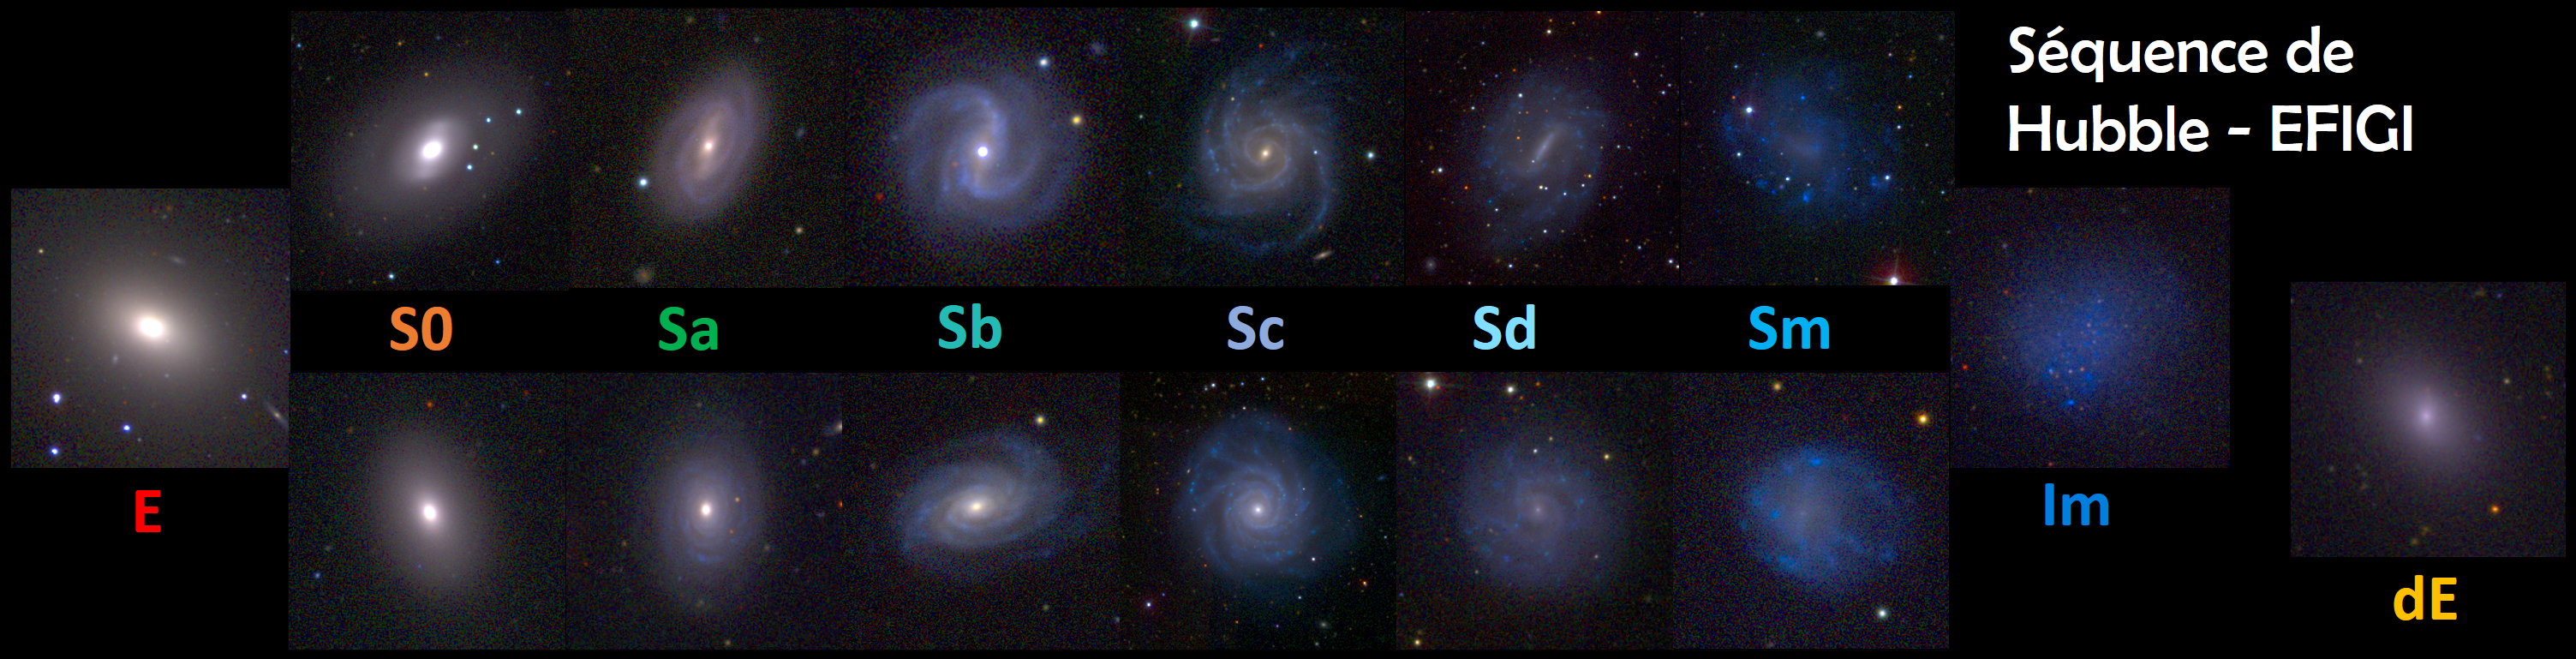 Figure 1 : La séquence de Hubble-de Vaucouleurs illustrée par les galaxies EFIGI